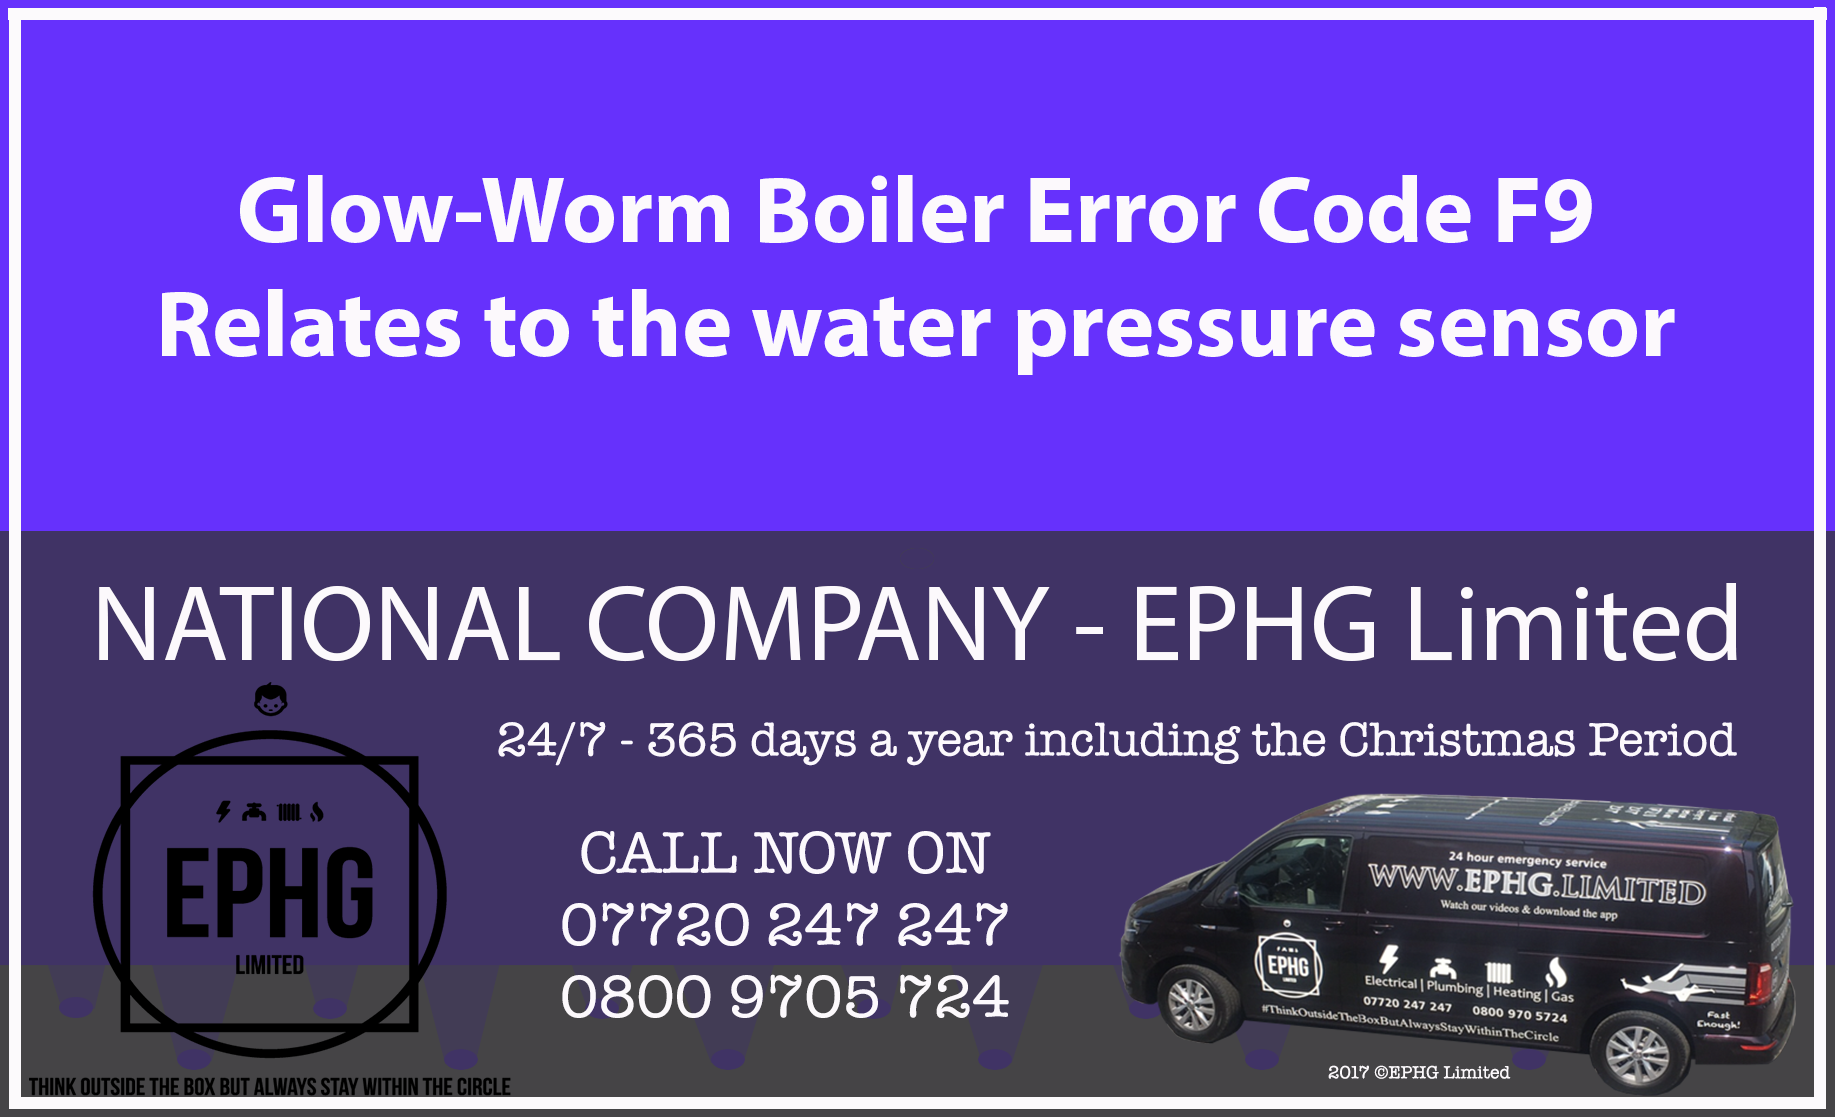 Glow-Worm boiler error code F9